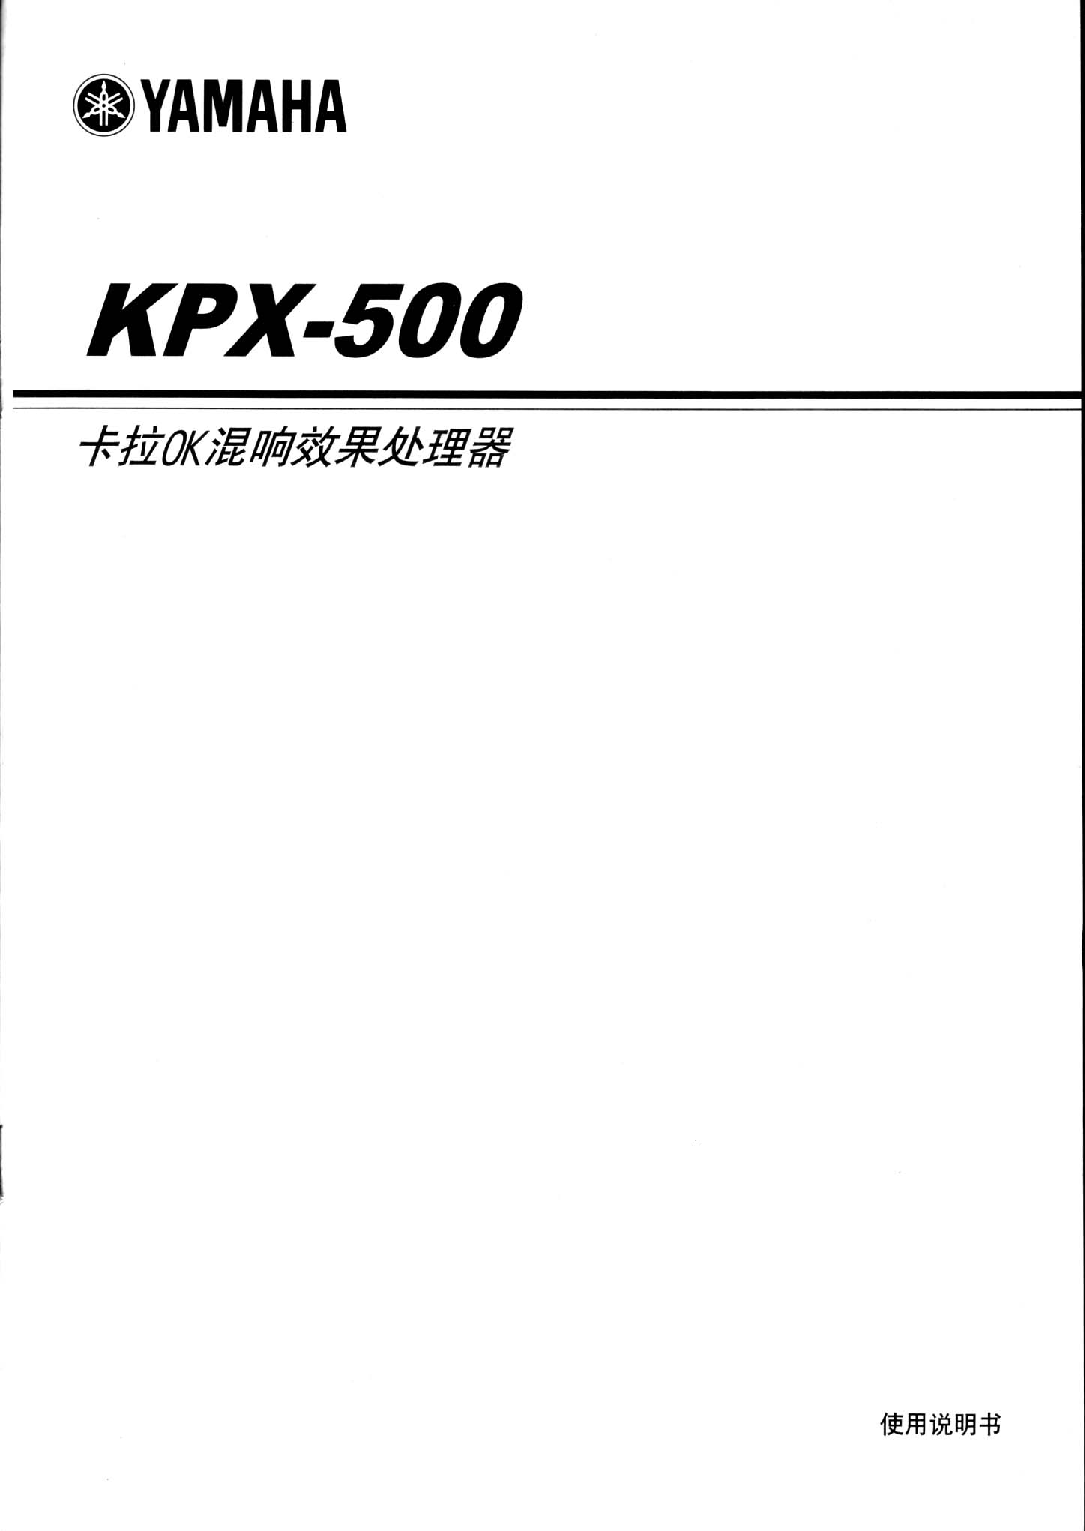 雅马哈 Yamaha KPX-500 使用说明书 封面